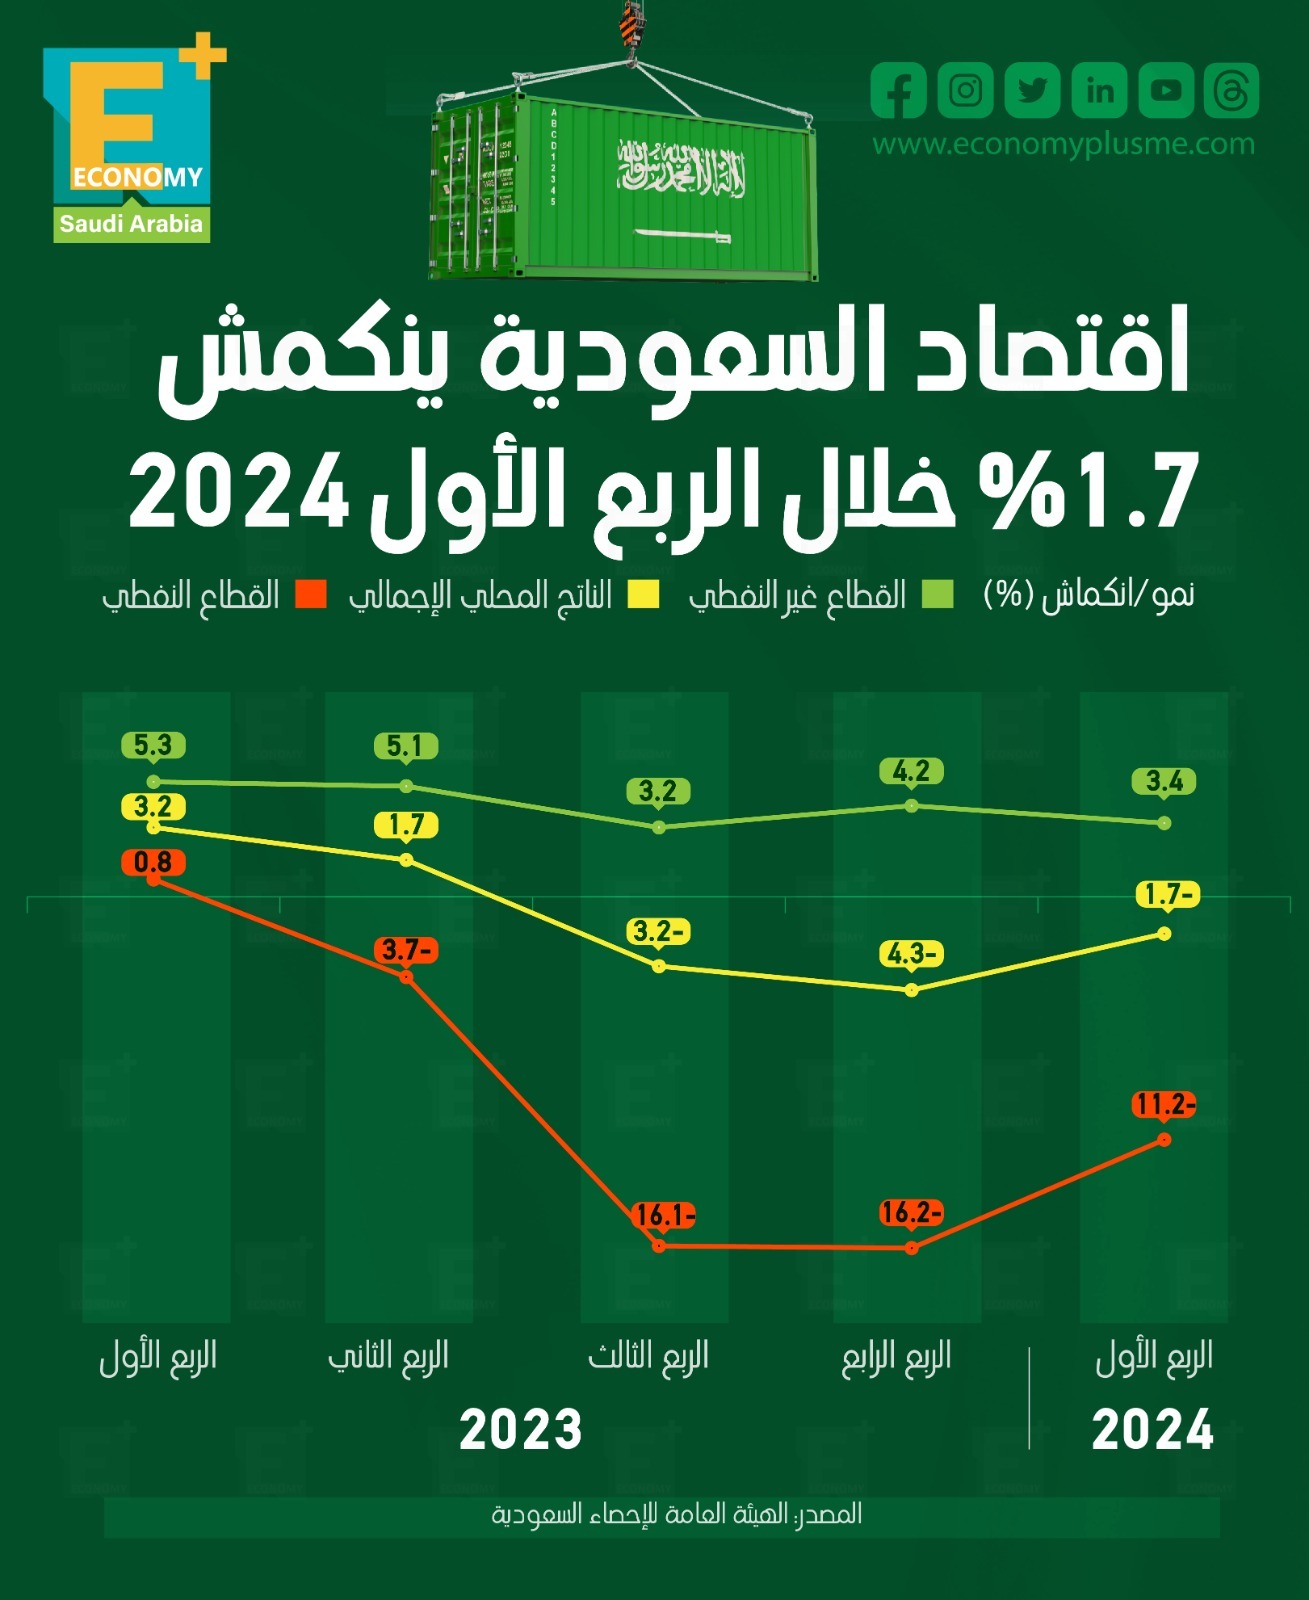 الاقتصاد السعودي ينكمش 1.7% في الربع الأول 2024
